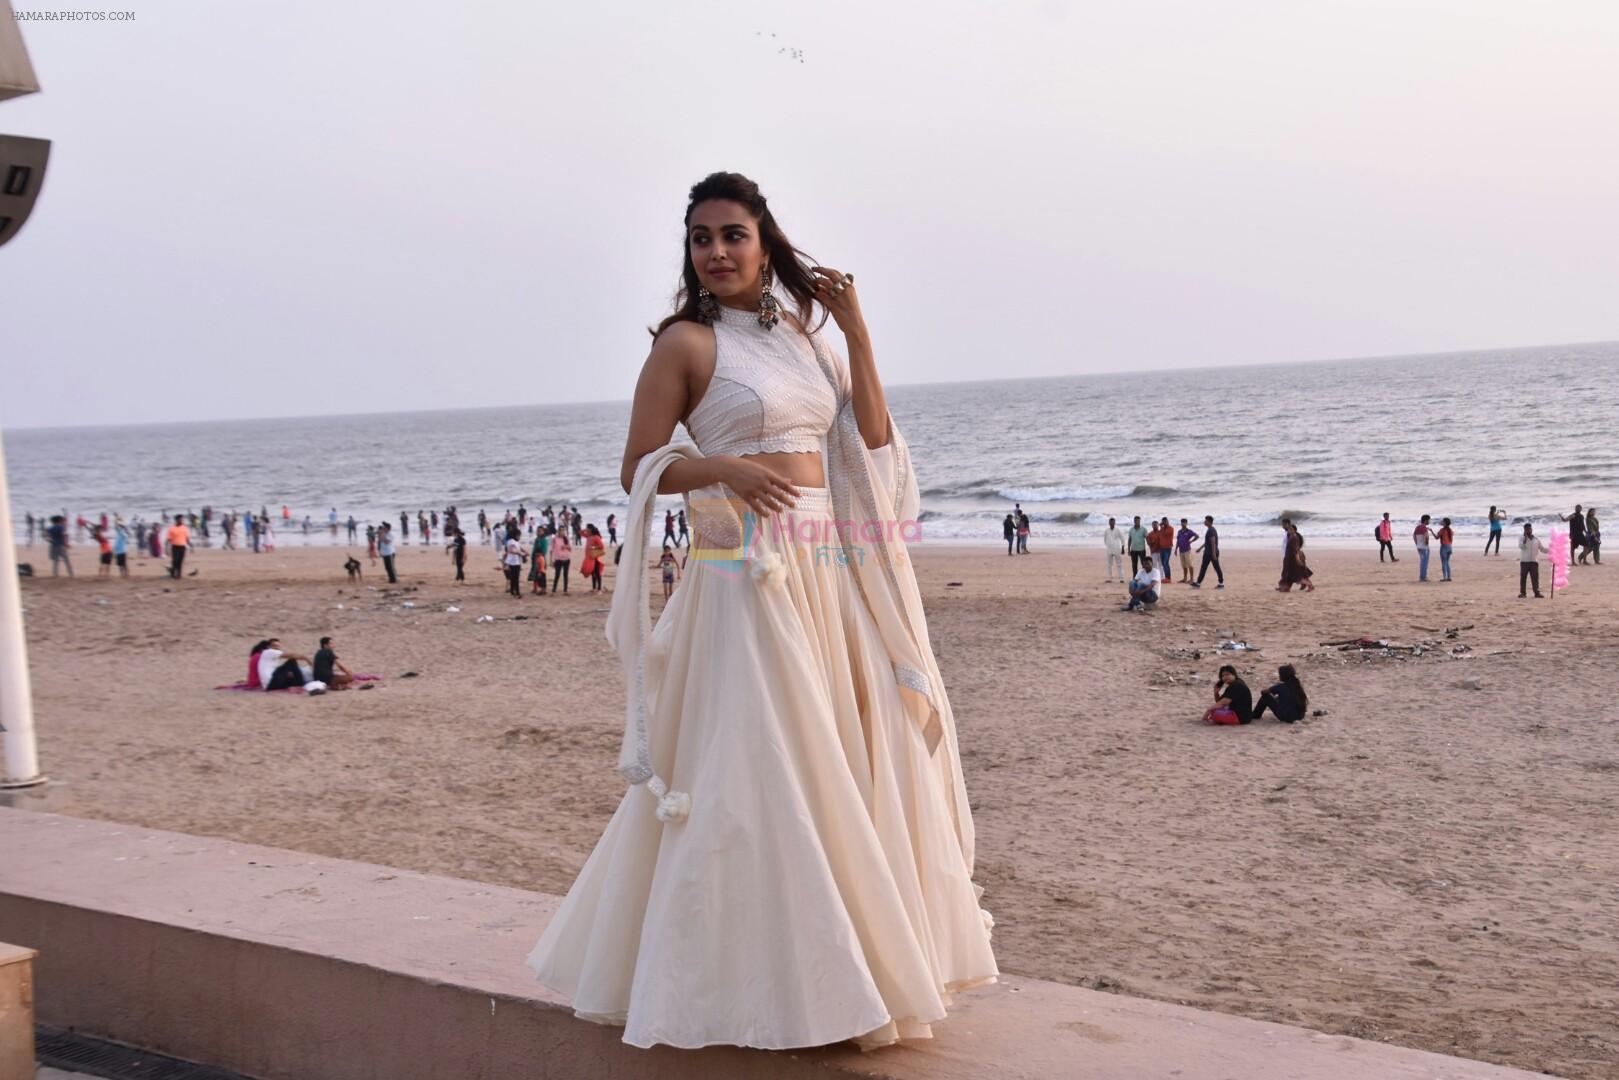 Swara Bhaskar at Veere Di Wedding media interactions at Sunny Sound juhu on 19th May 2018